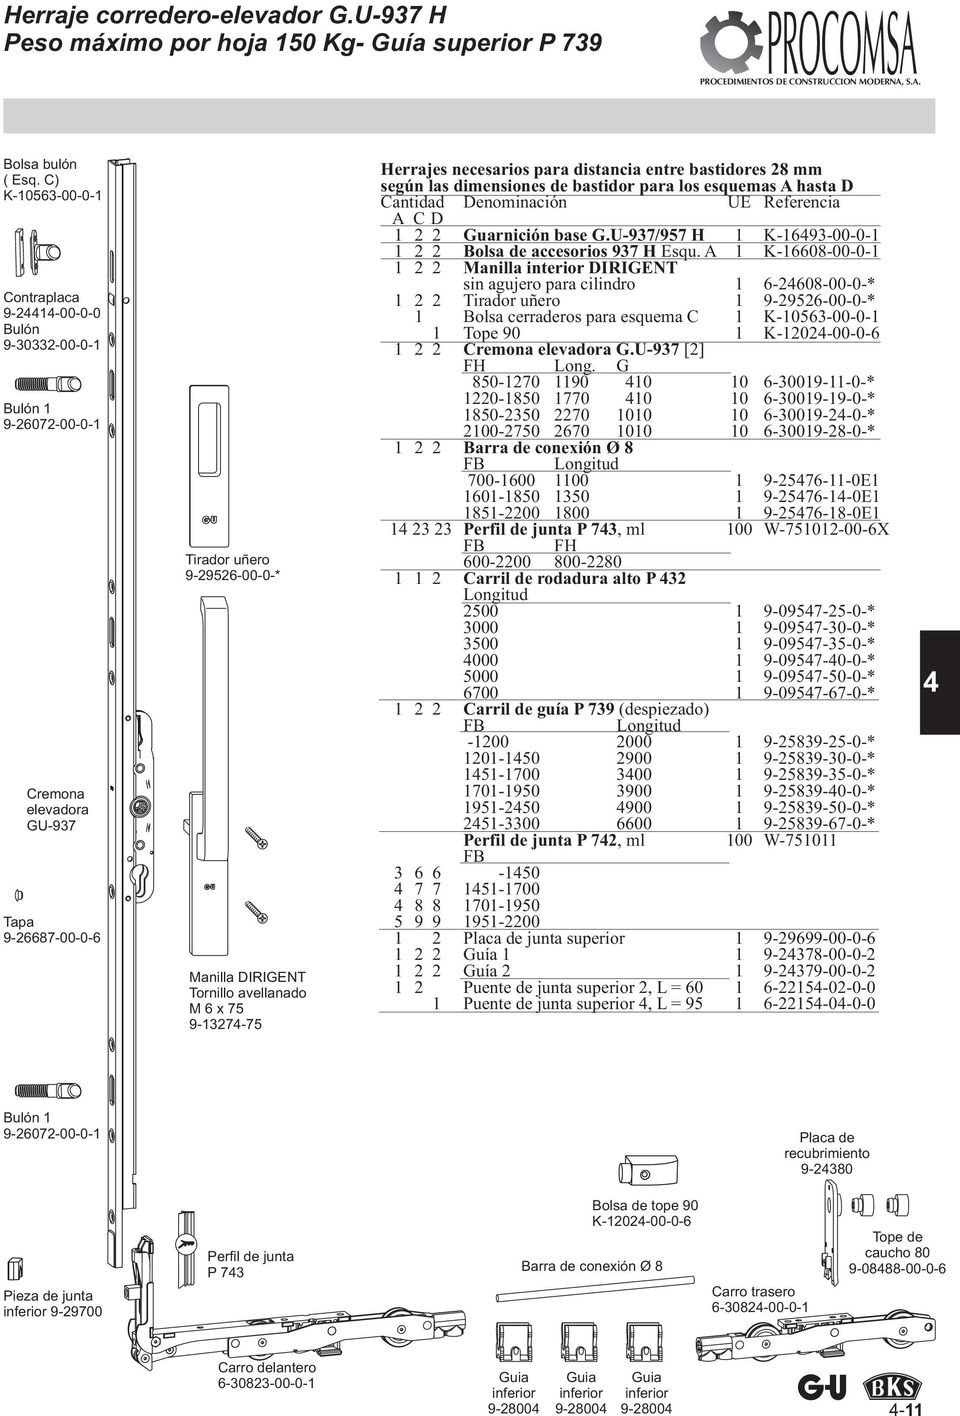 9-1327-75 Herrajes necesarios para distancia entre bastidores 28 mm según las dimensiones de bastidor para los esquemas A hasta D Cantidad Denominación UE Referencia ACD 1 2 2 Guarnición base G.